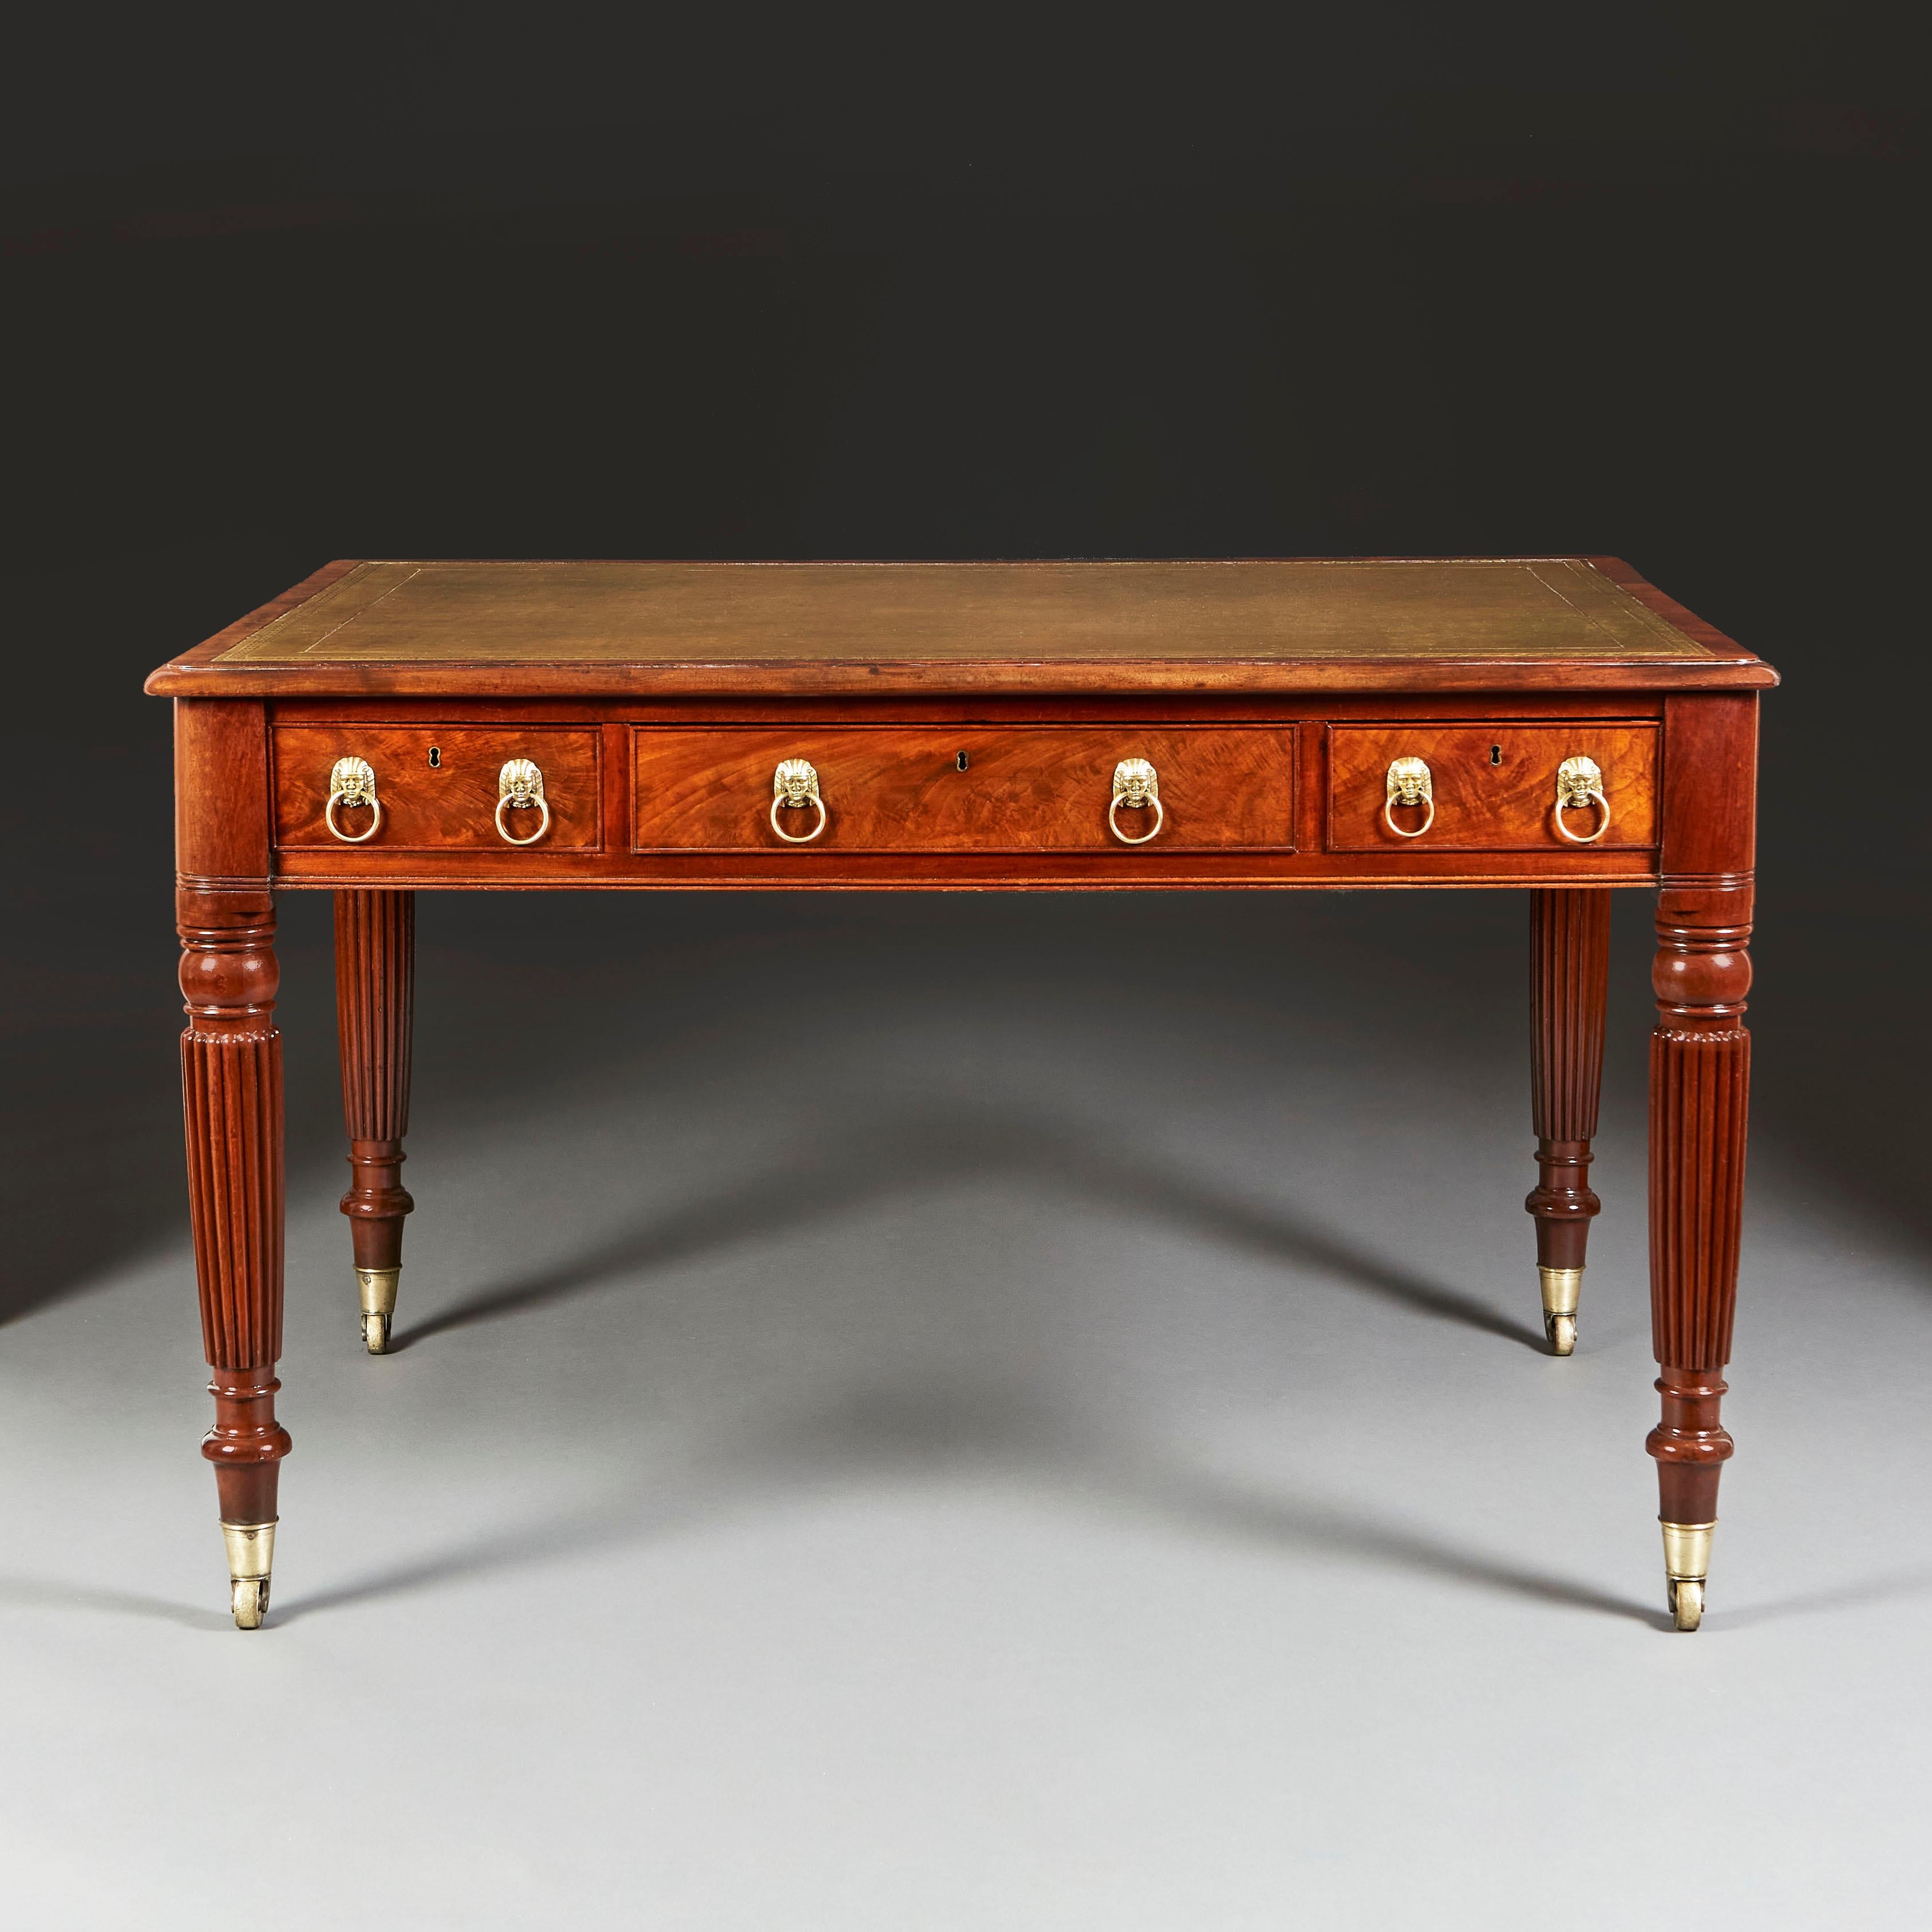 Une belle table à écrire en acajou du début du 19ème siècle avec 6 tiroirs, 3 à l'arrière et 3 à l'avant, avec des poignées en forme de masque égyptien, dessus en cuir vert, le tout soutenu par des pieds fuselés et cannelés, terminés par des